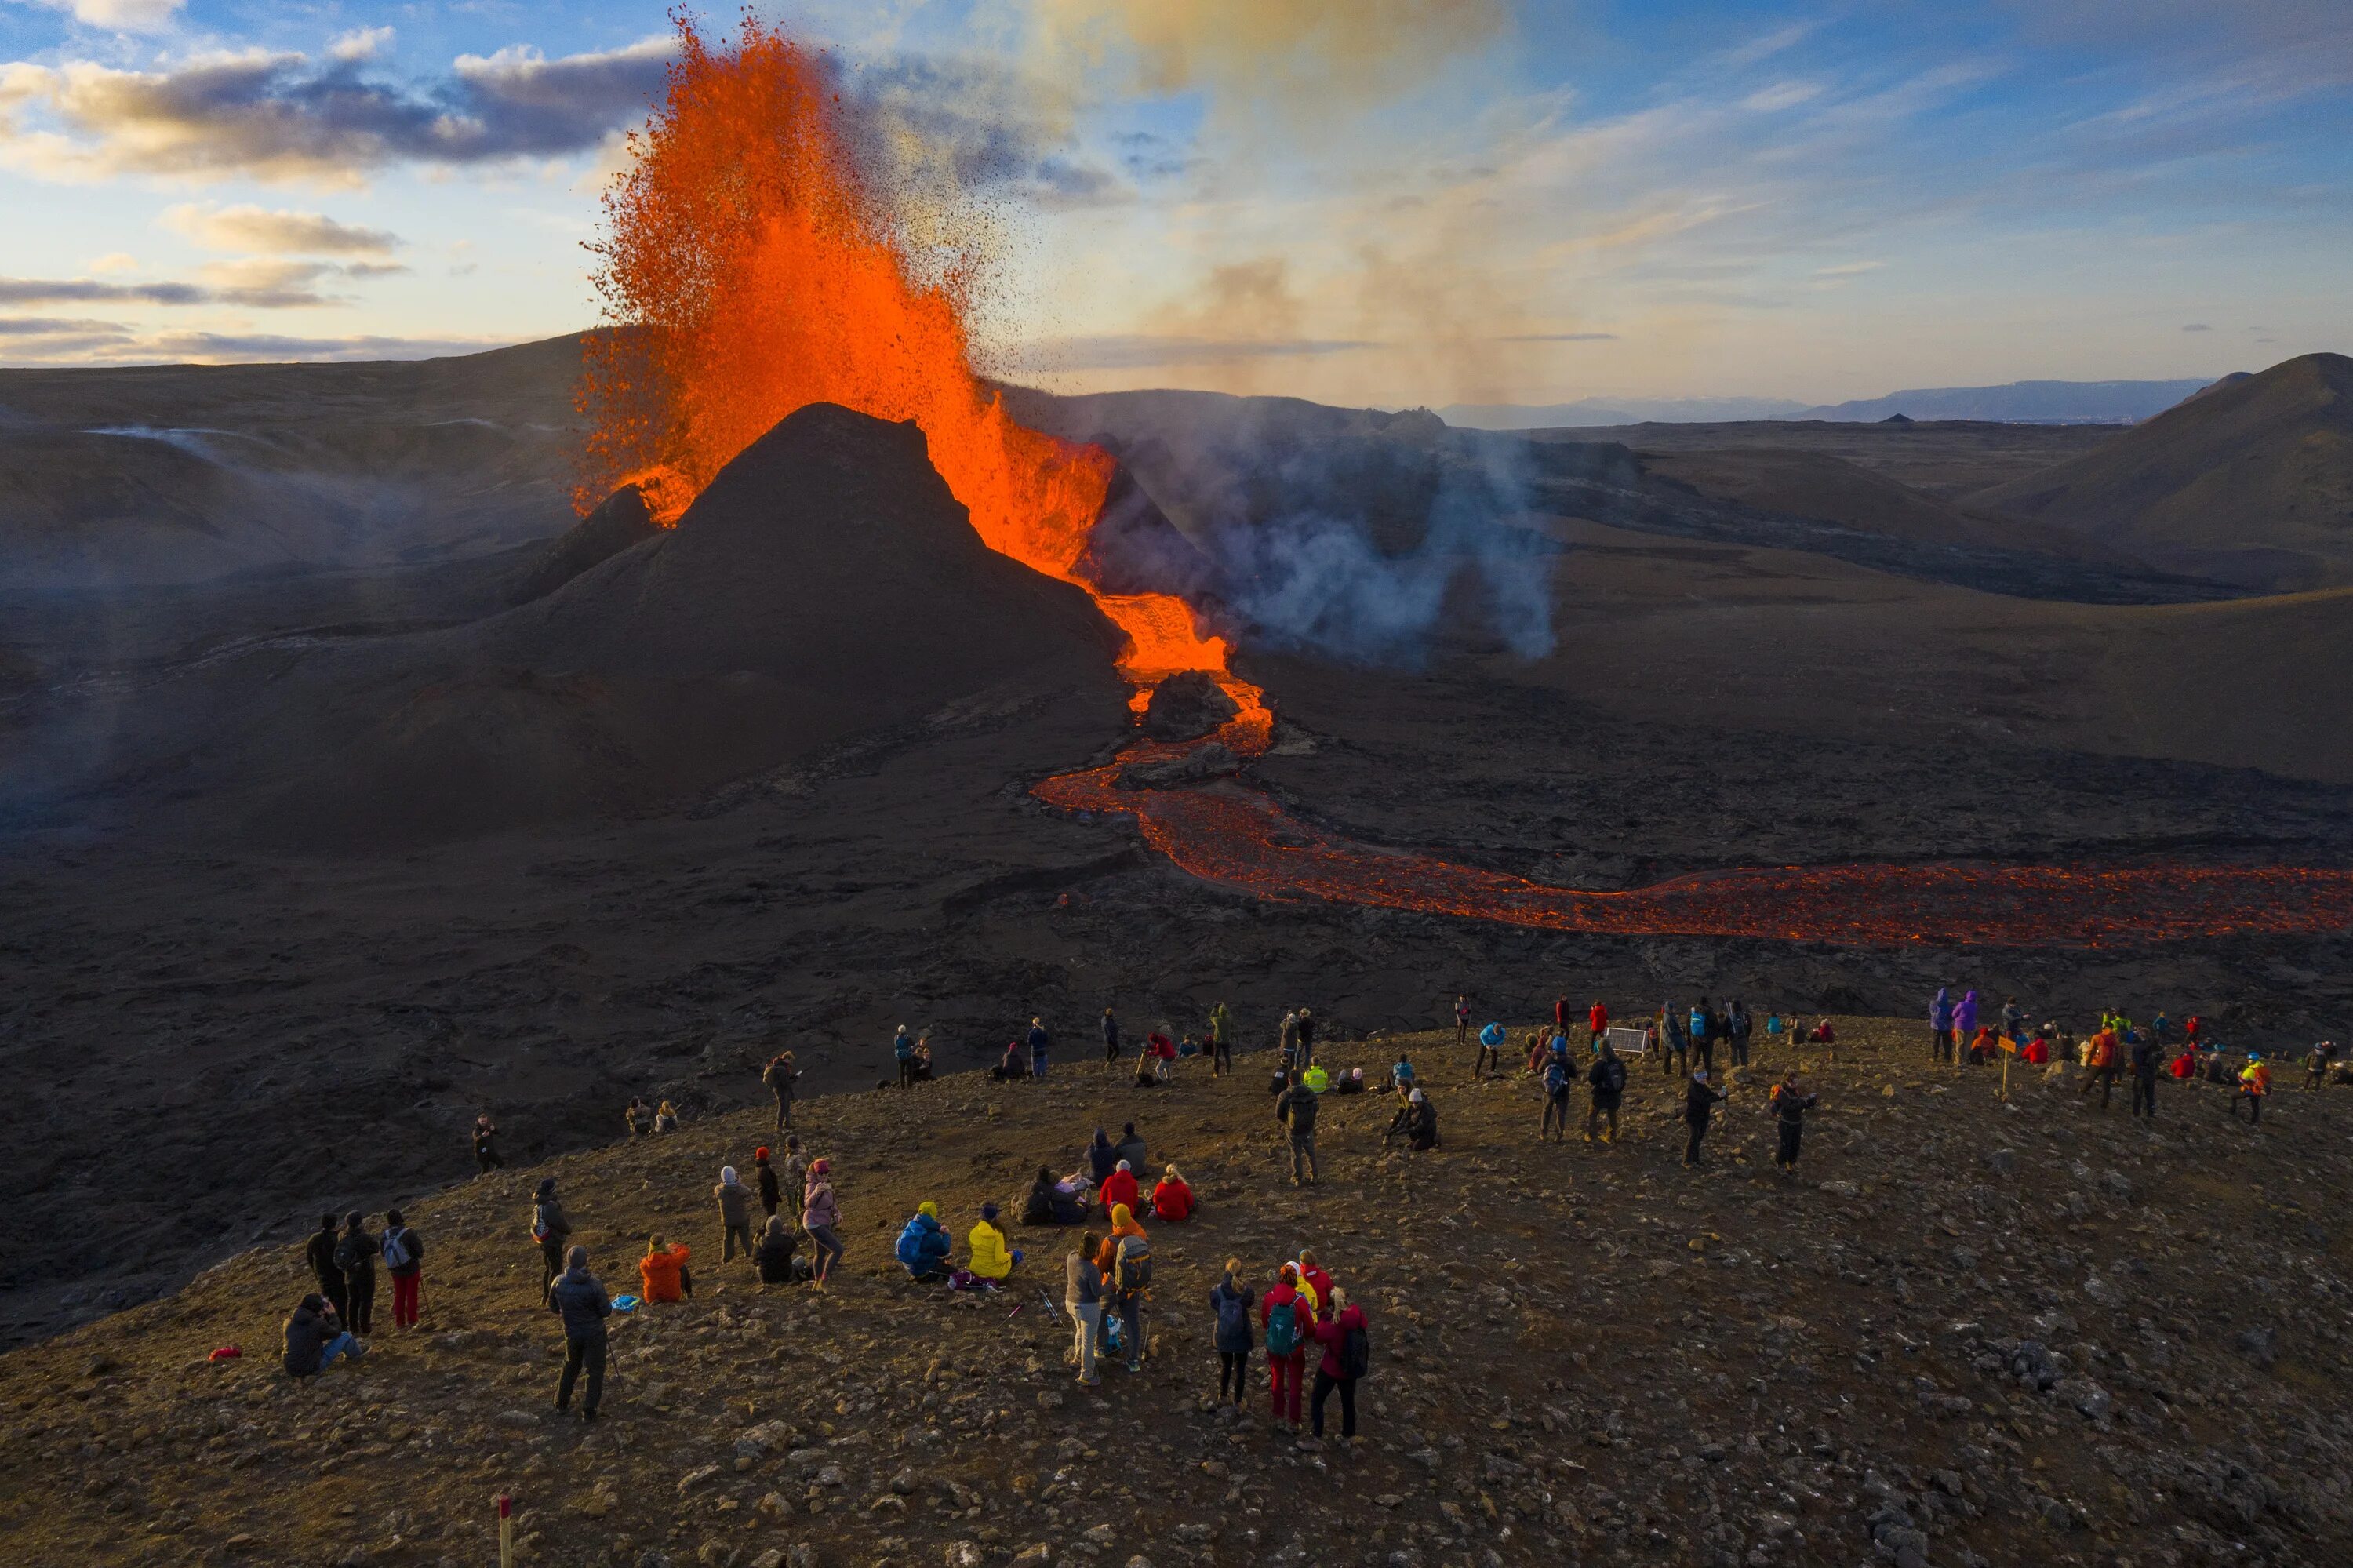 Много вулканов действующих находятся на полуострове. Вулкан в Исландии фаградальсфьядль. Вулкан Исландии Эйяфьятлайокудль 2010. Извержение вулкана в Исландии 2021. Исландия вулкан Эйяфьятлайокудль извержение 2010.